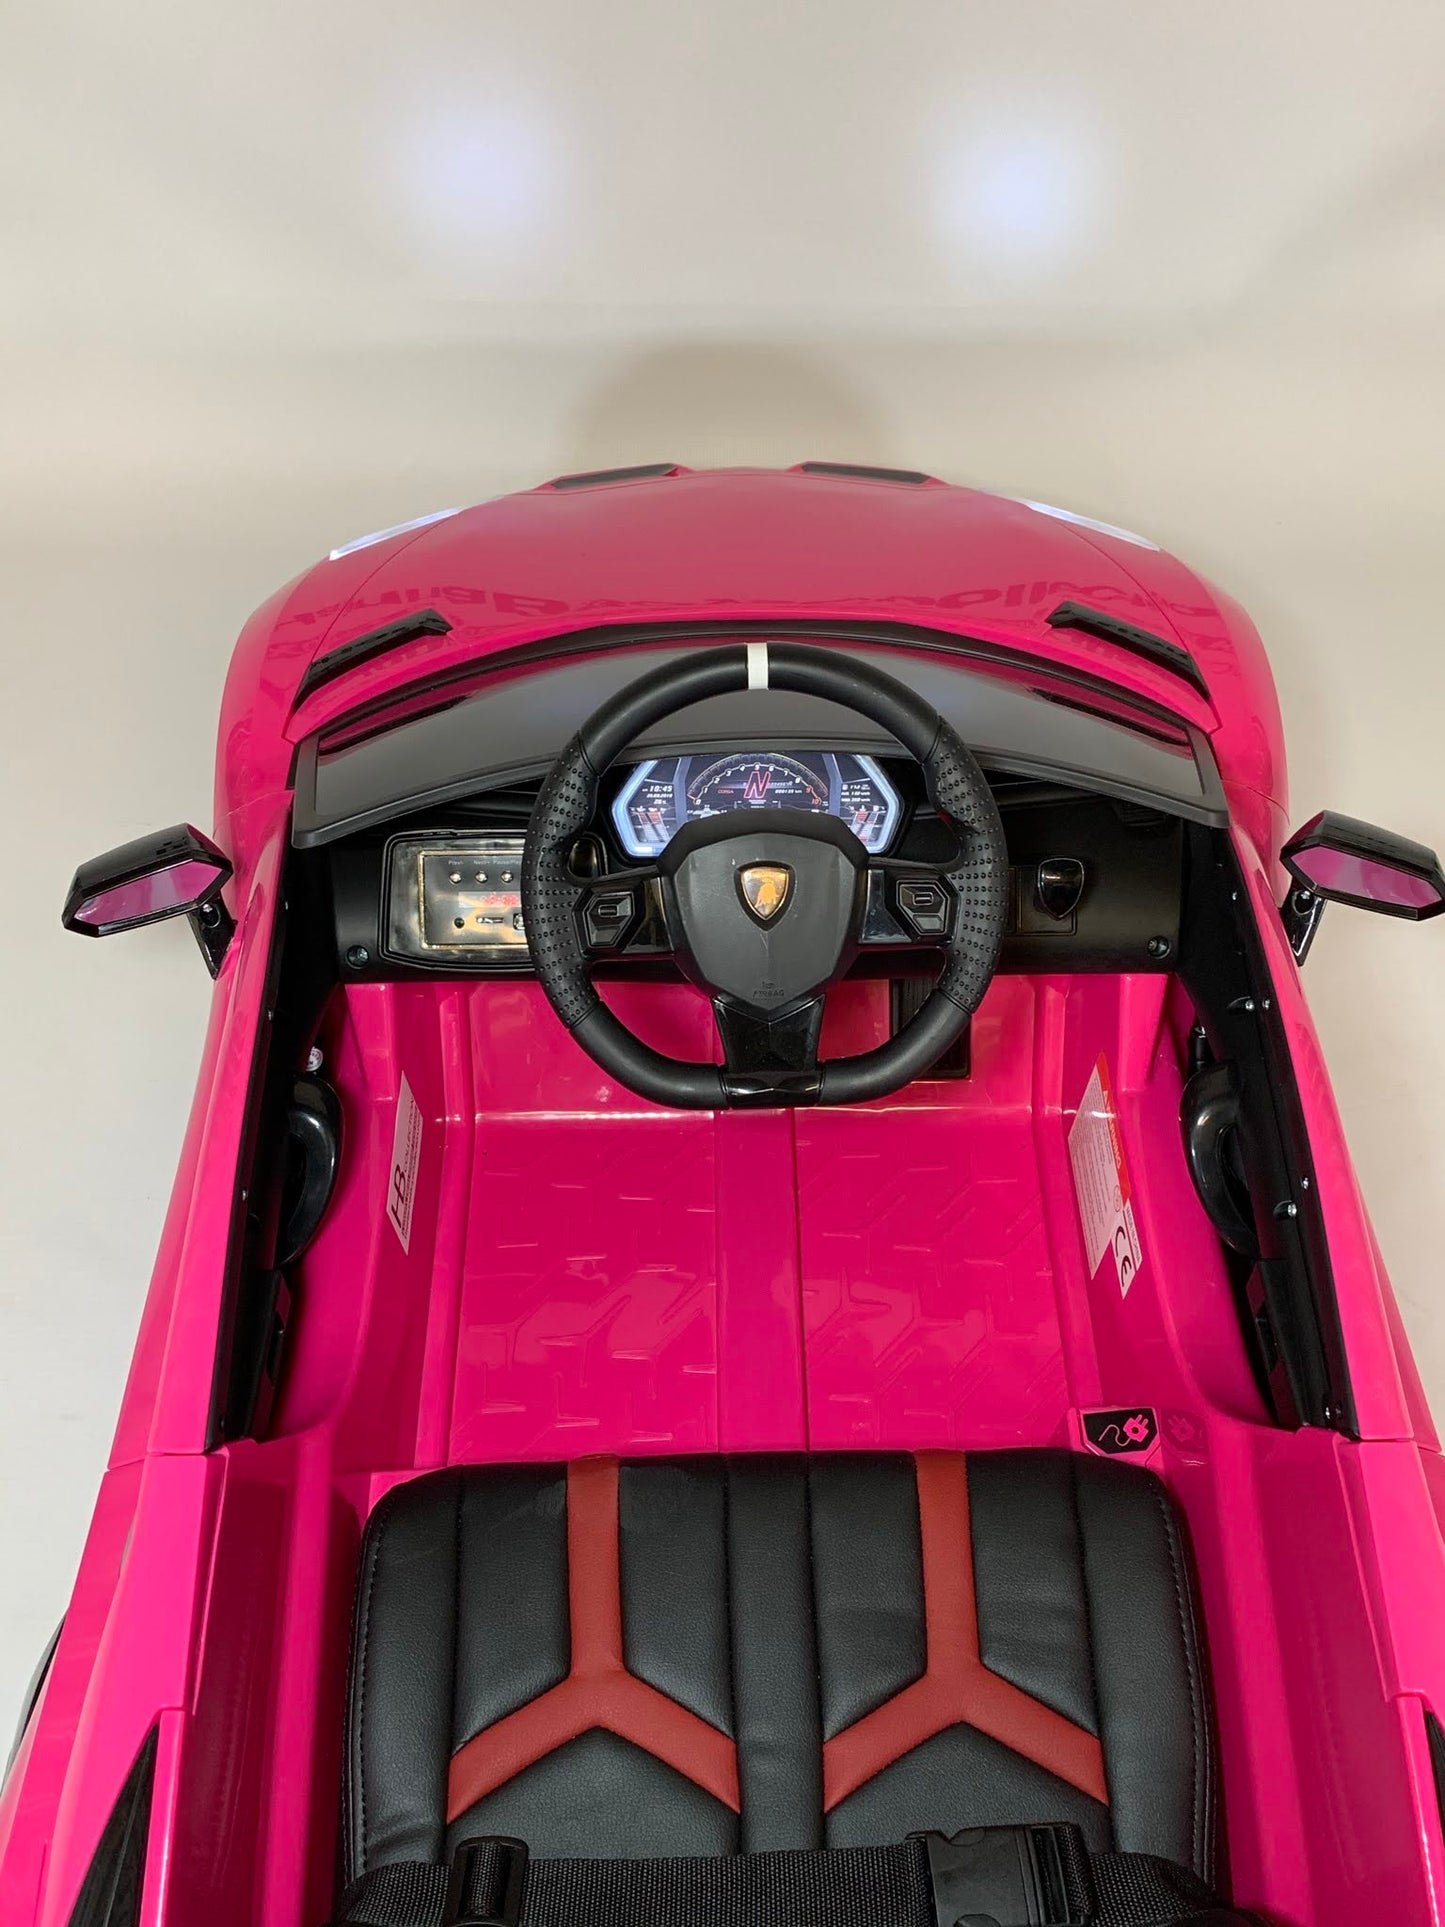 HB Lamborghini Aventador SVJ - Pink